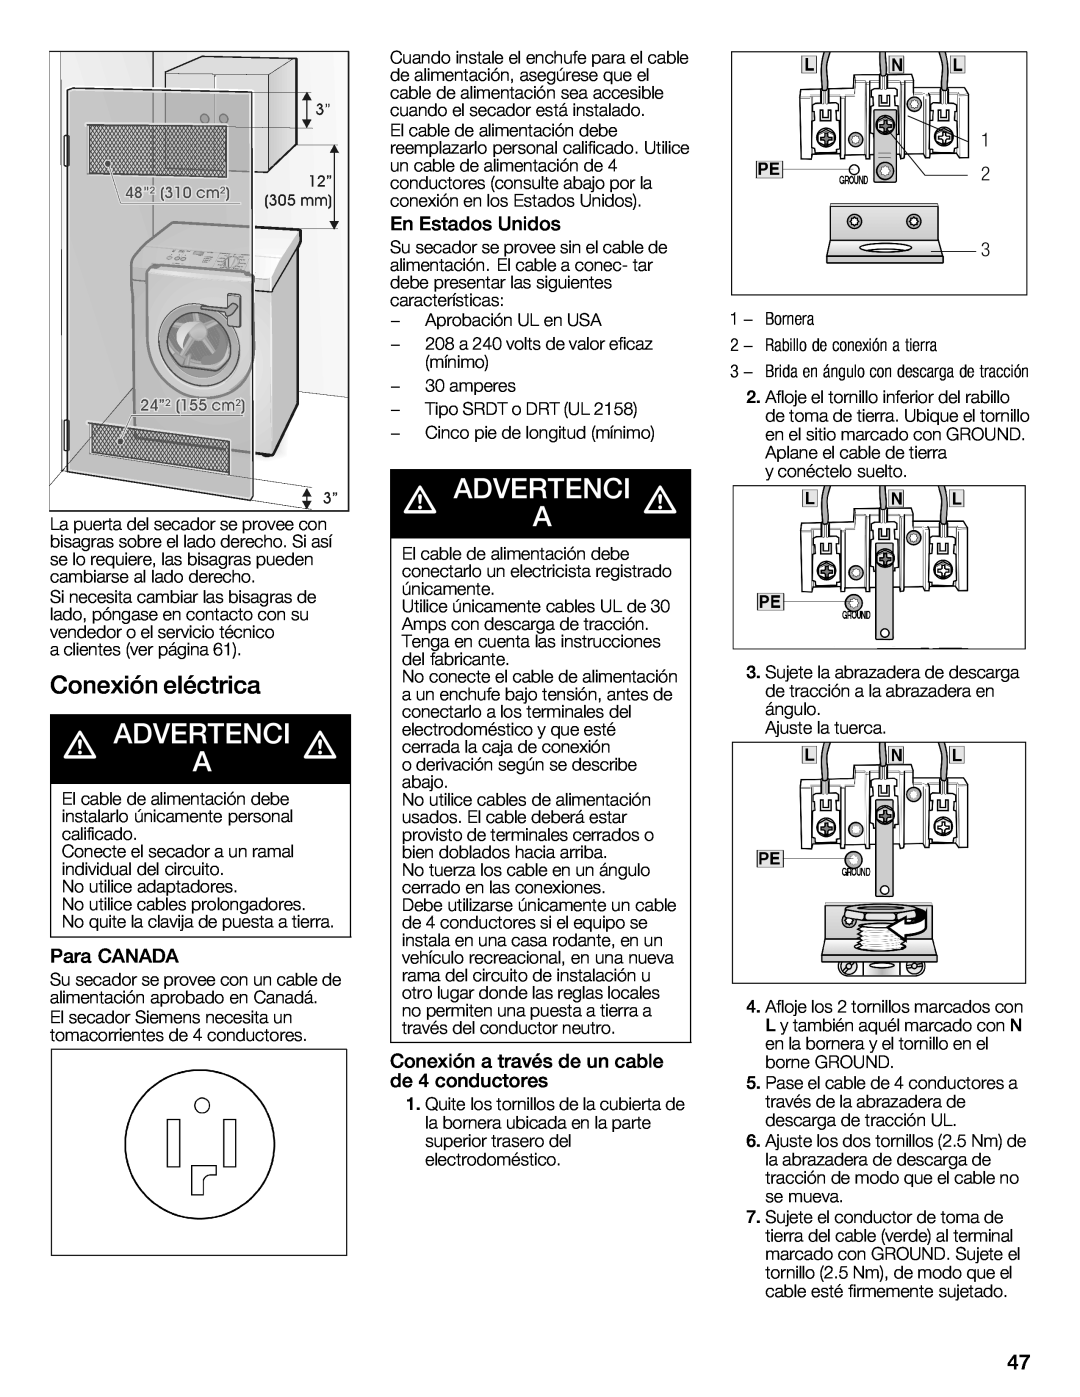 Bosch Appliances WTXD5321CN d ADVERTENCI d, Conexión, eléctrica, siguientes, eficaz, conexión, de tracción, únicamente 